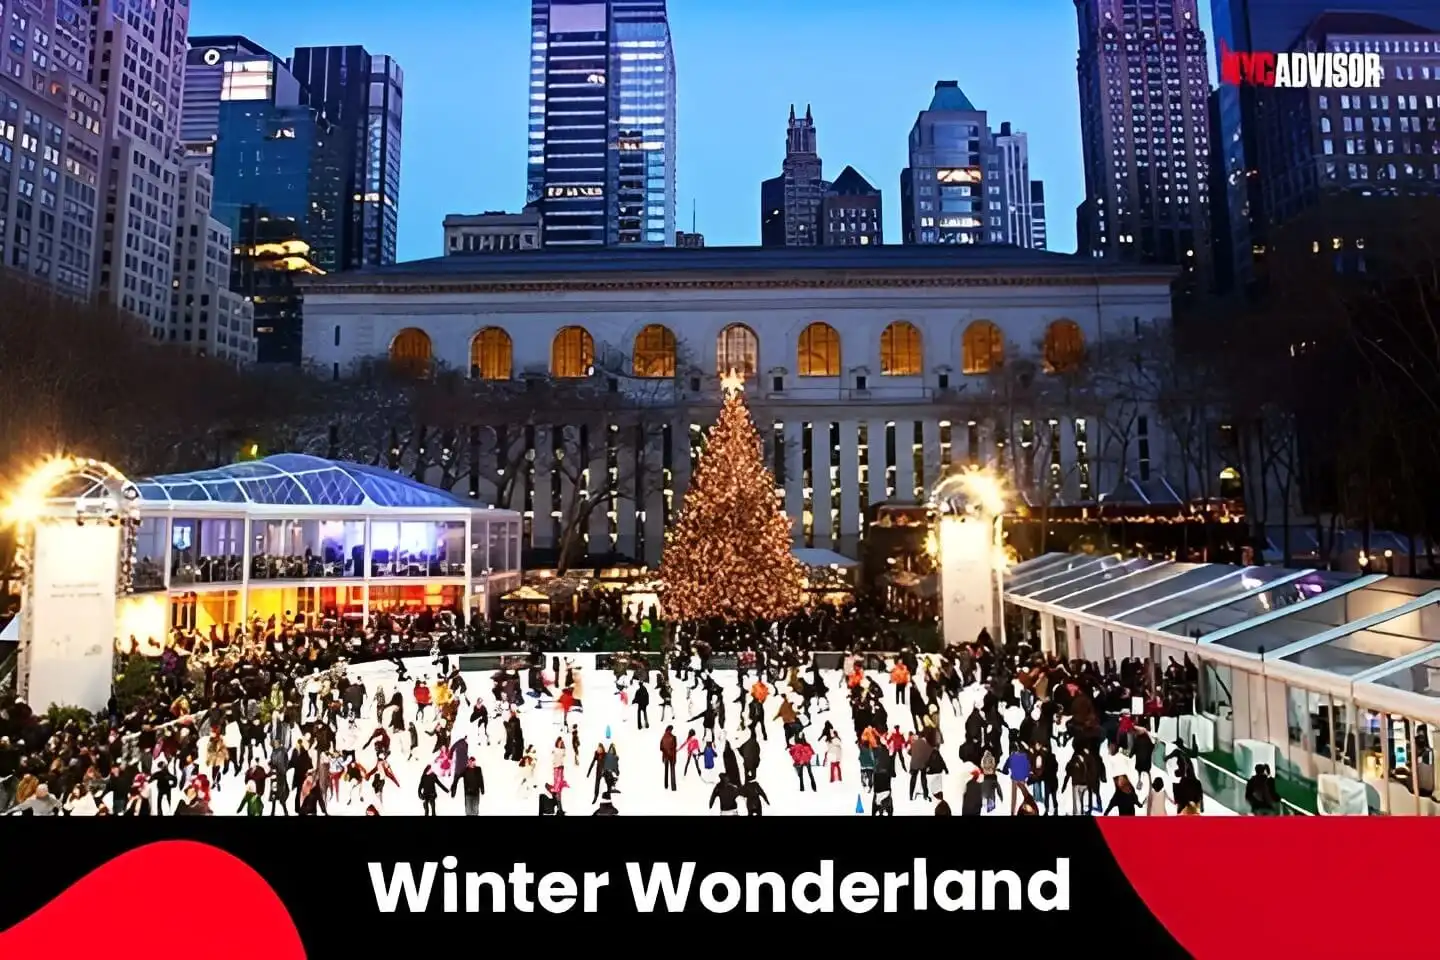 Winter Wonderland in December, NYC